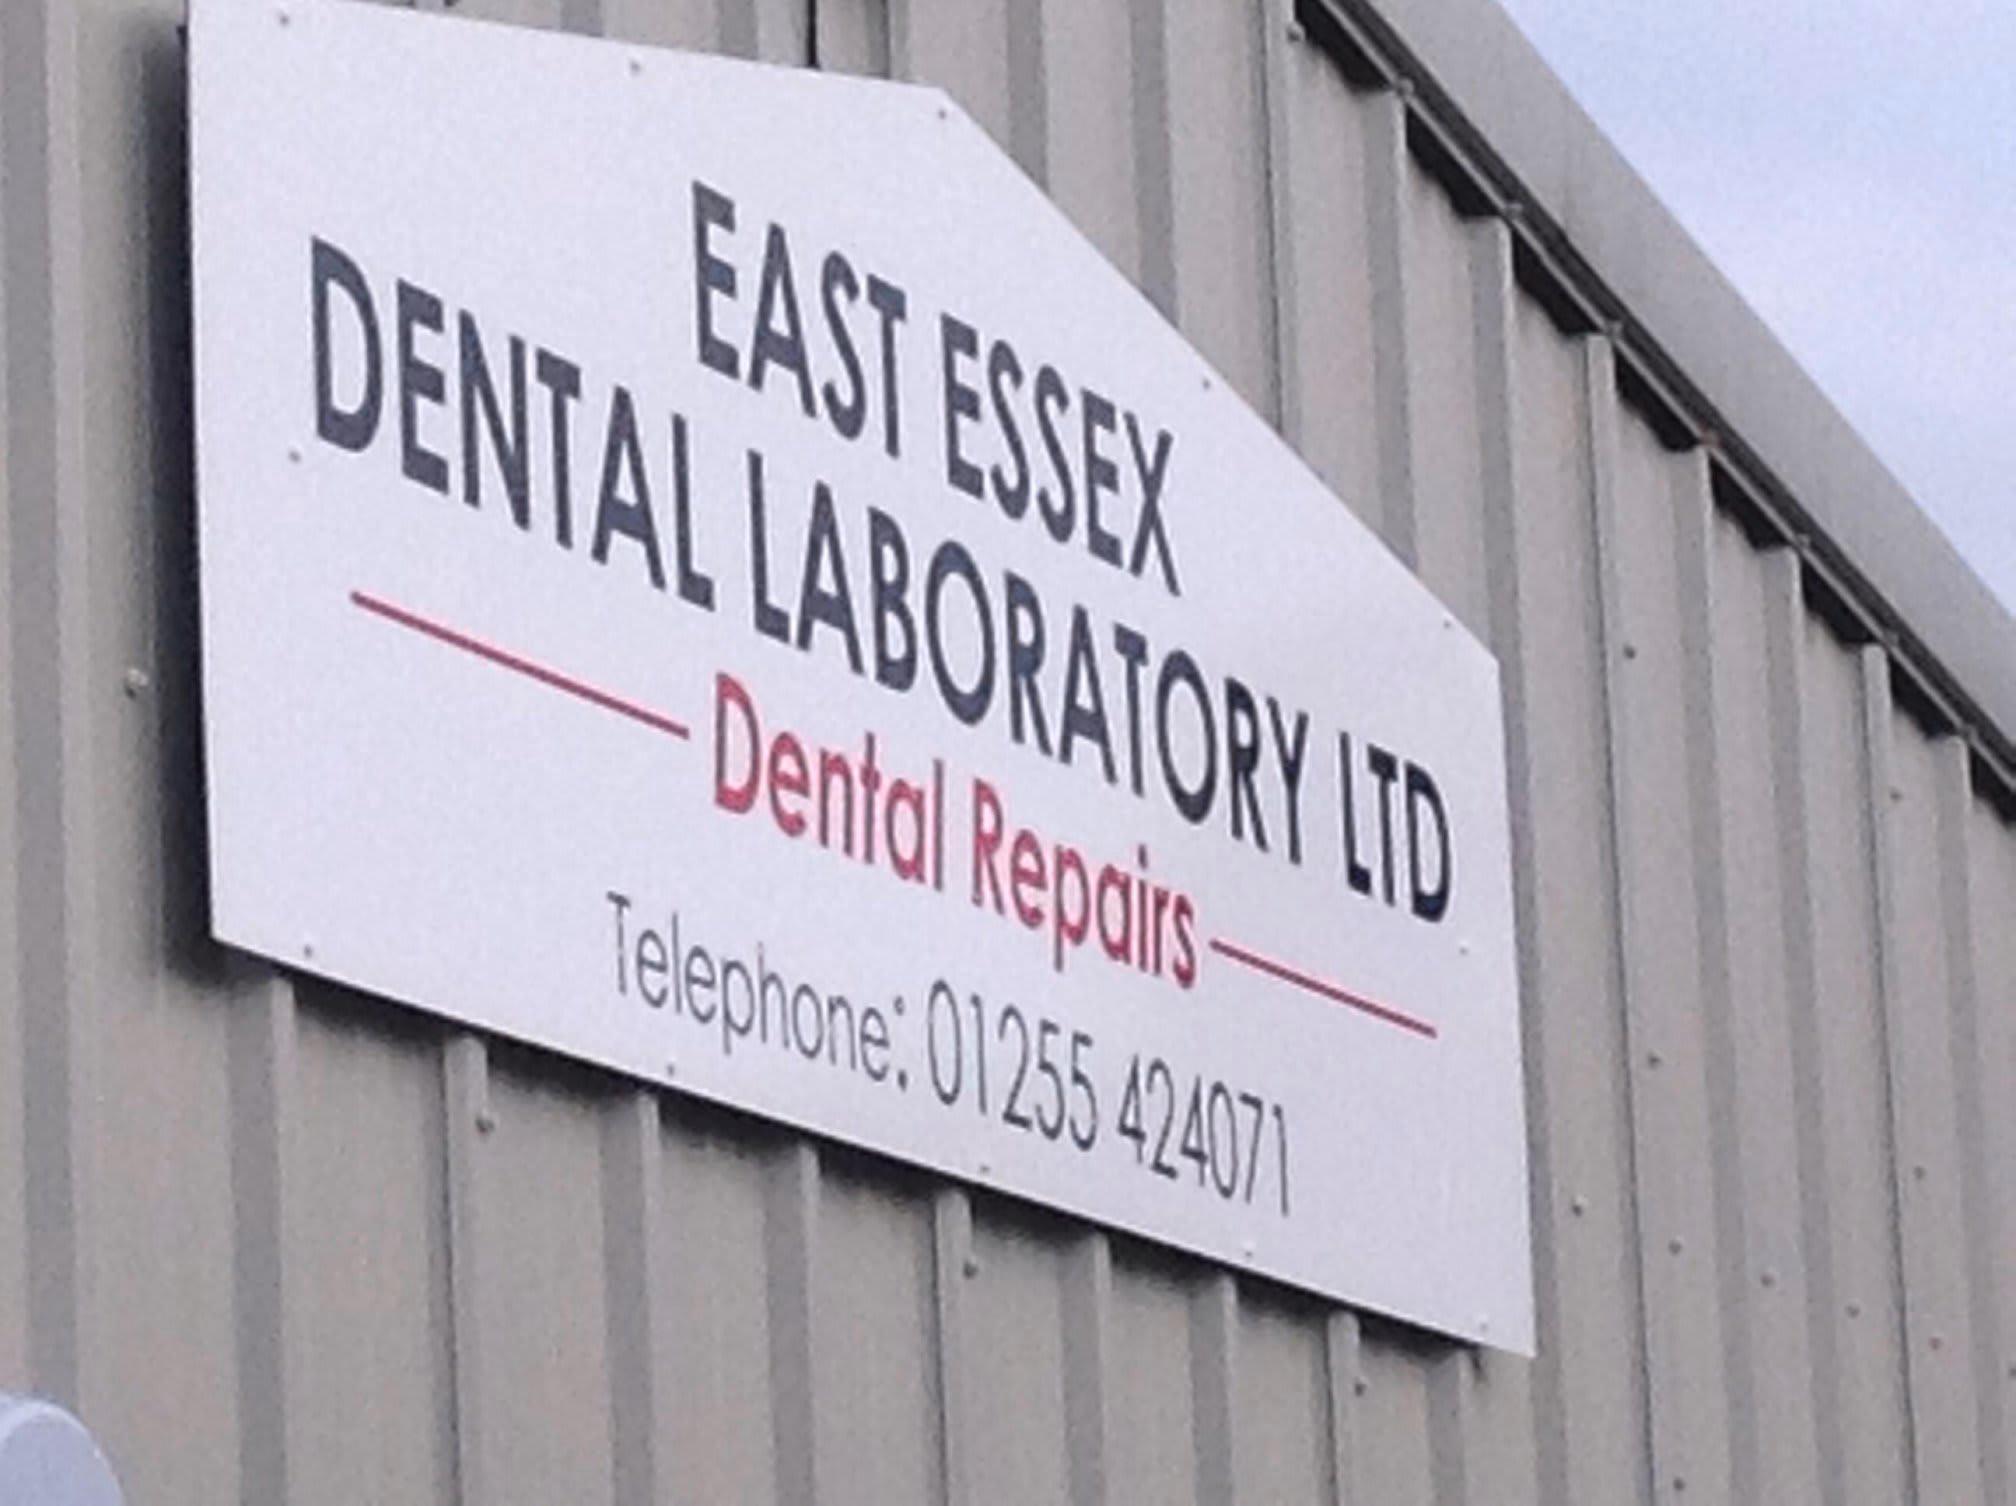 Images East Essex Dental Laboratory Ltd